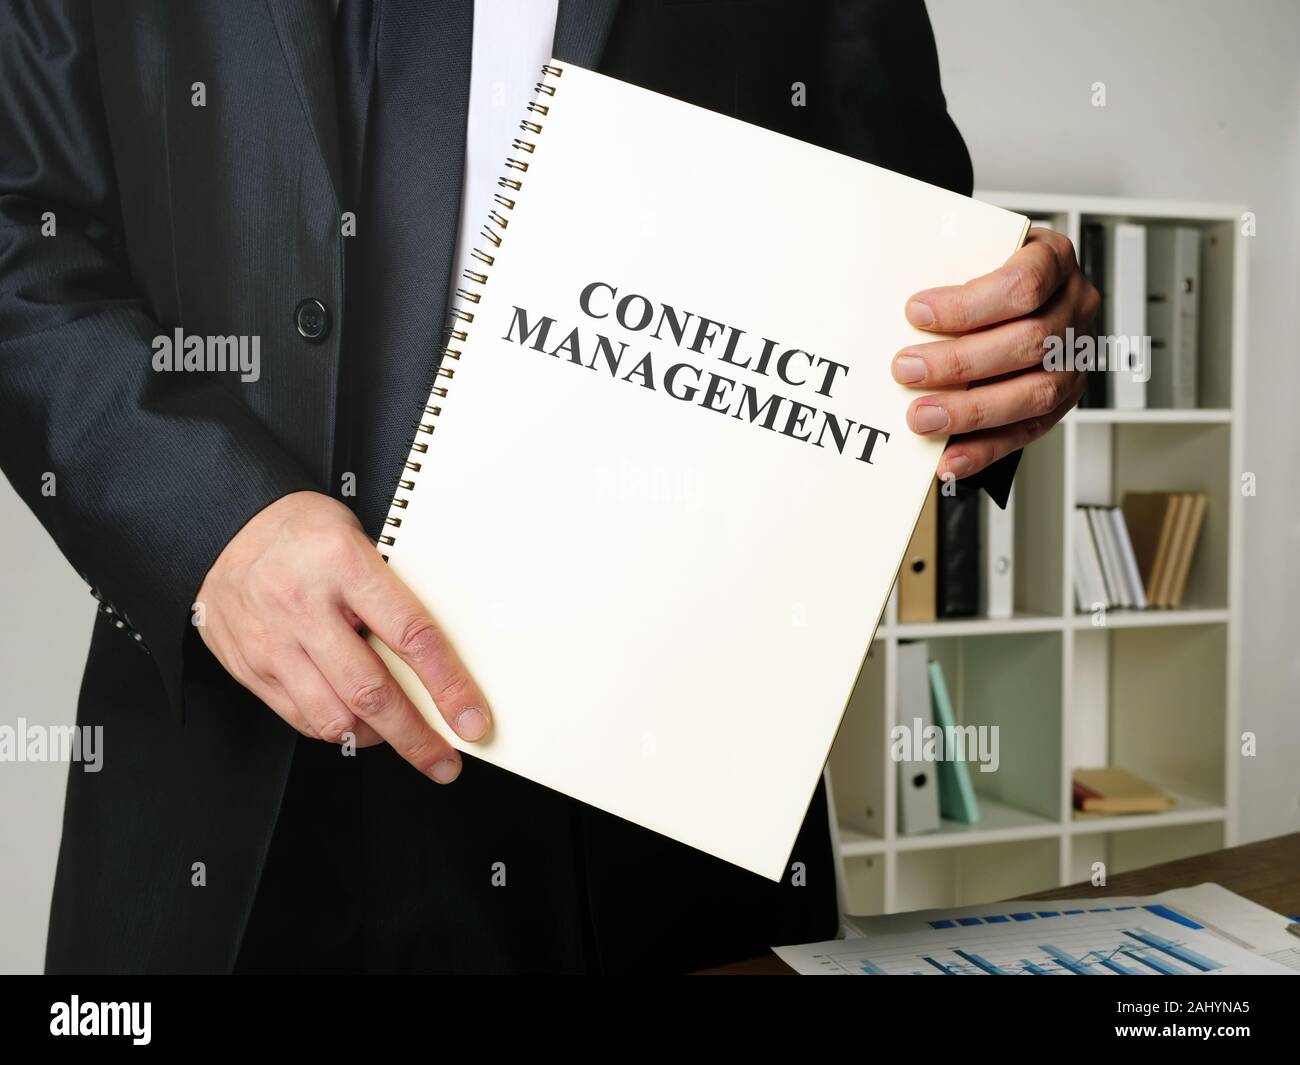 Konfliktmanagement Buch in den Händen der Manager. Stockfoto